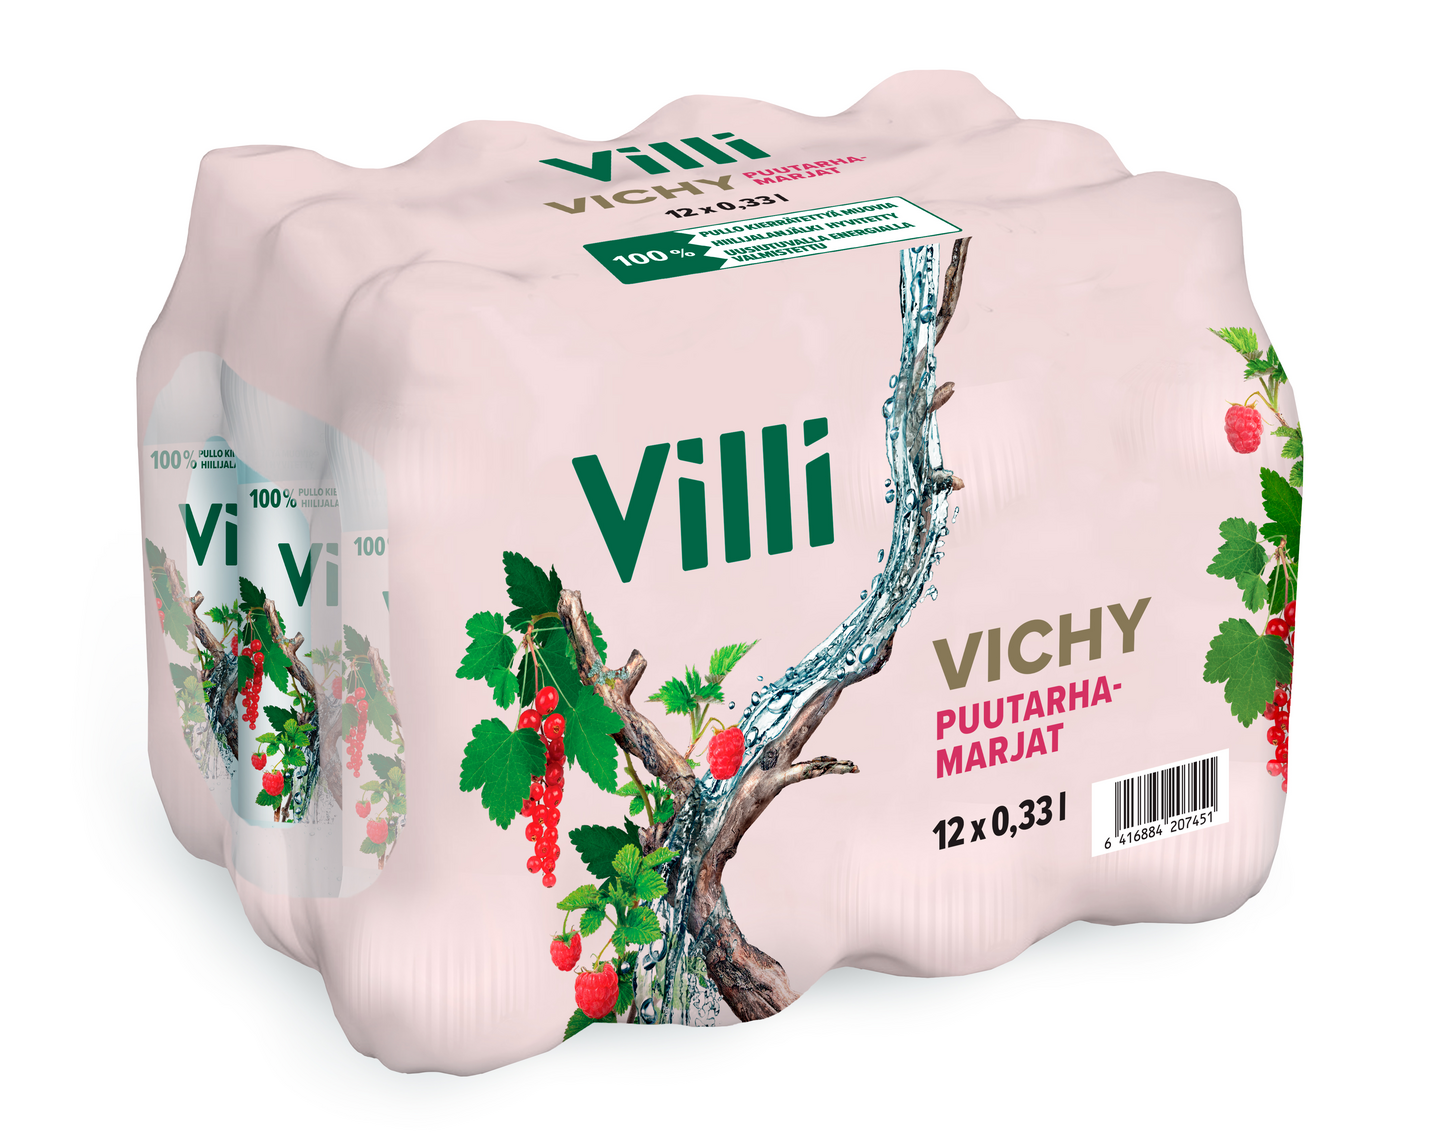 Villi Vichy puutarhamarjat 0,33l 12-pack PUOLILAVA